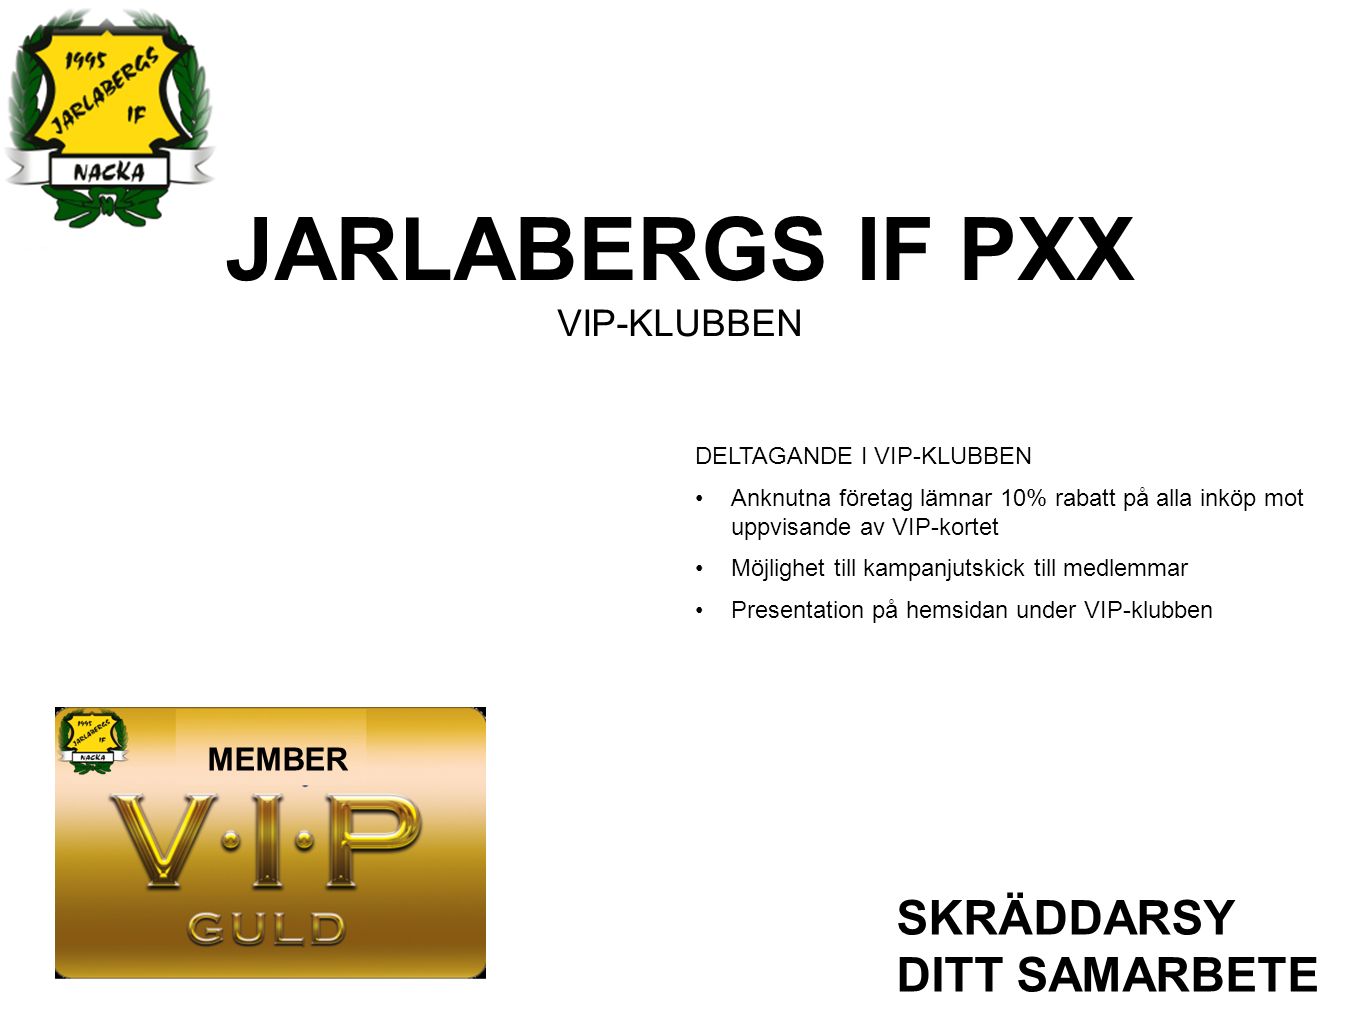 JARLABERGS IF PXX VIP-KLUBBEN SKRÄDDARSY DITT SAMARBETE DELTAGANDE I VIP-KLUBBEN Anknutna företag lämnar 10% rabatt på alla inköp mot uppvisande av VIP-kortet Möjlighet till kampanjutskick till medlemmar Presentation på hemsidan under VIP-klubben MEMBER